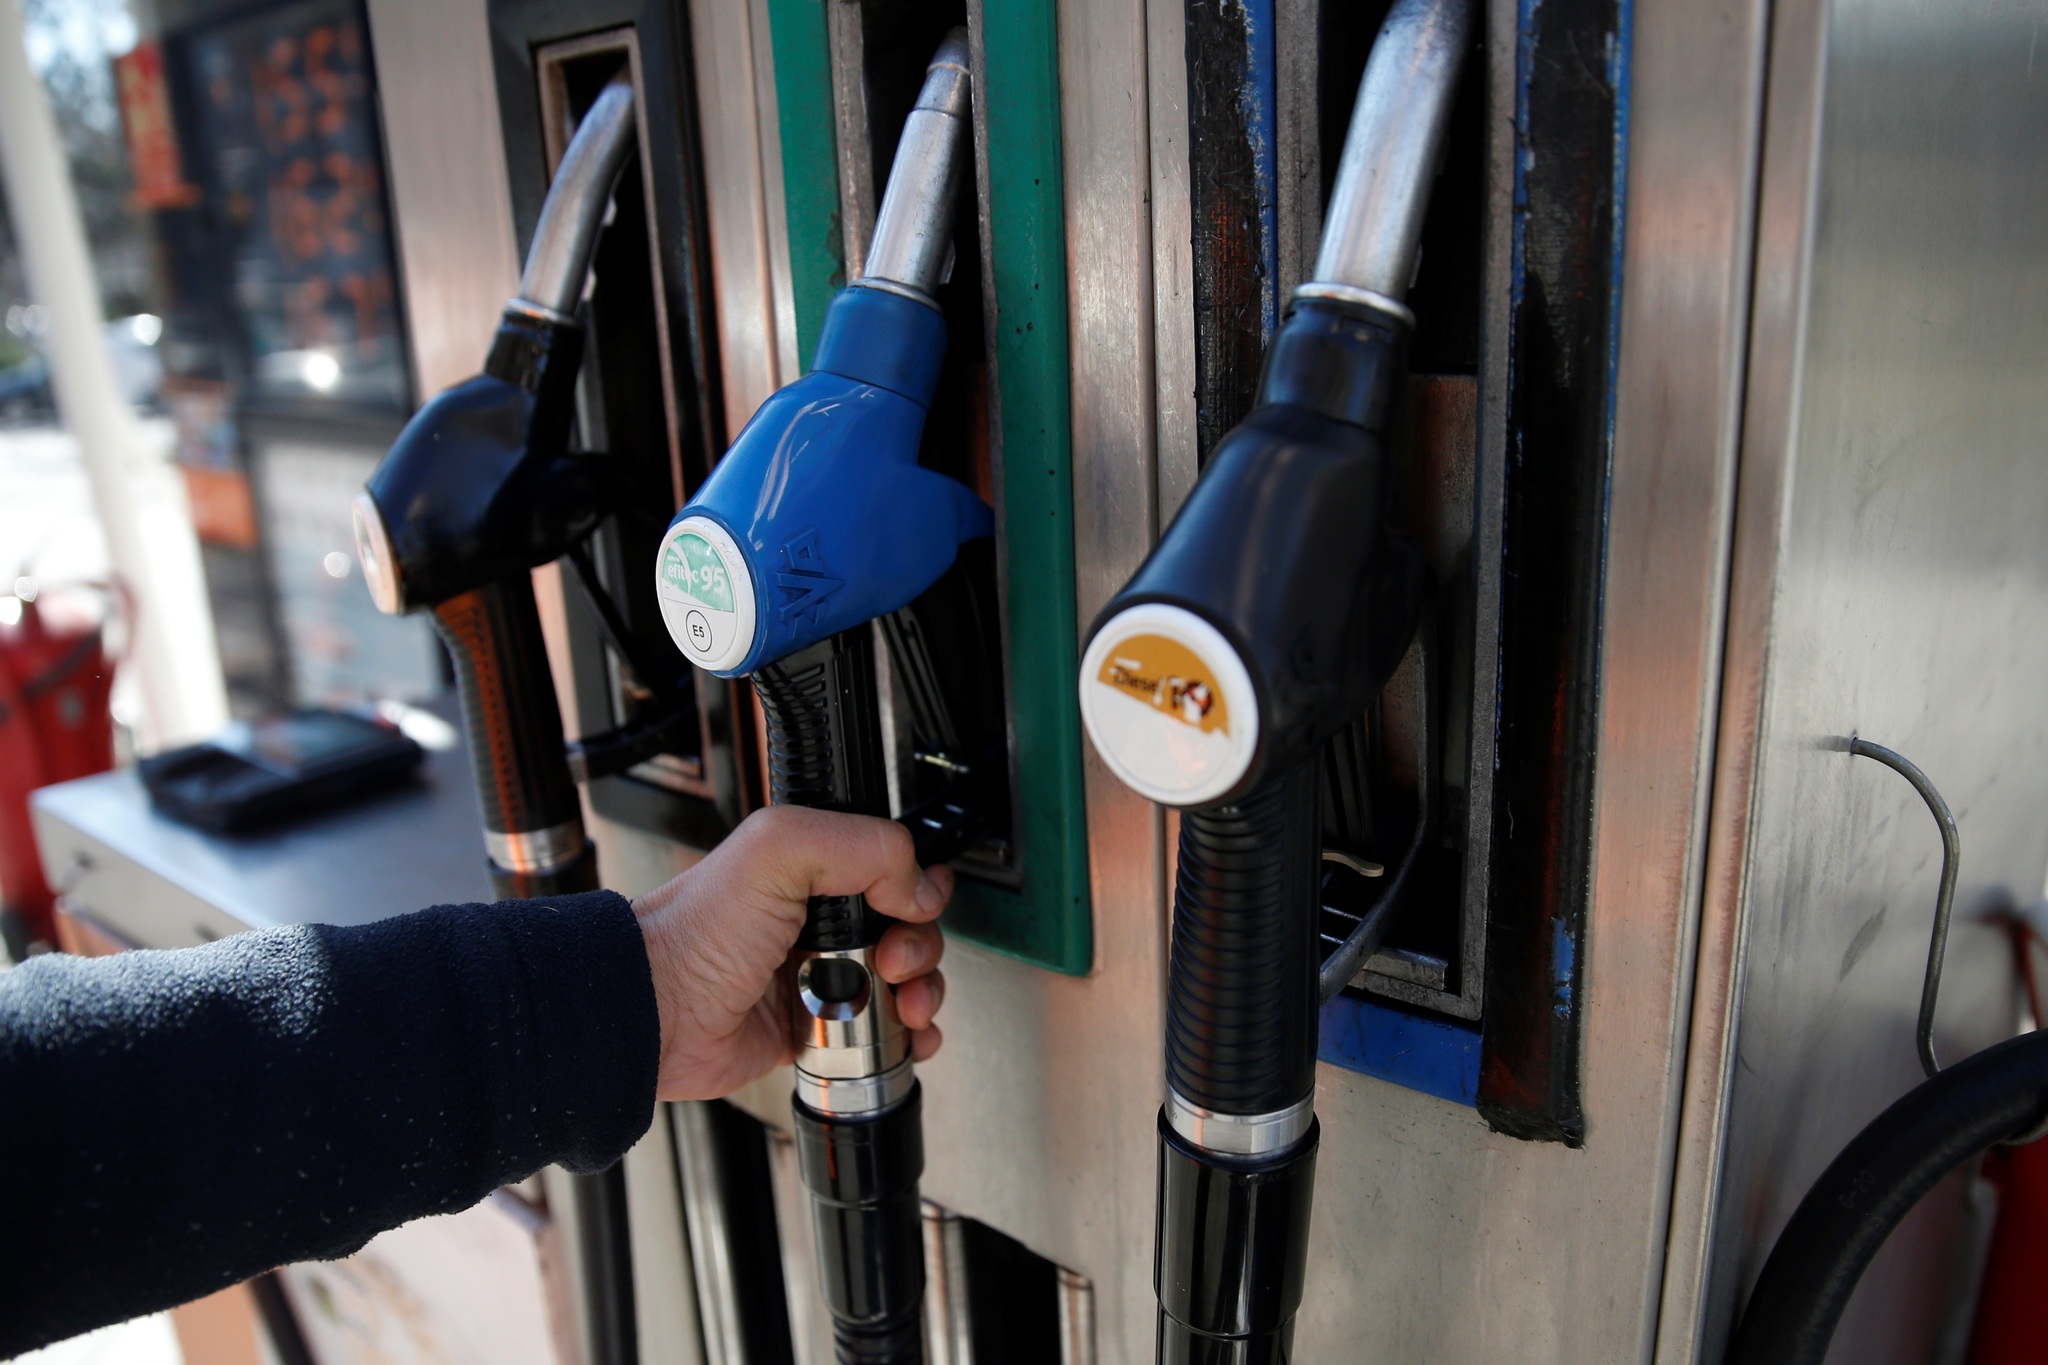 diesel - record historico - precio - 1,462 euros - Comision Europea - gasolina - precio del combustible